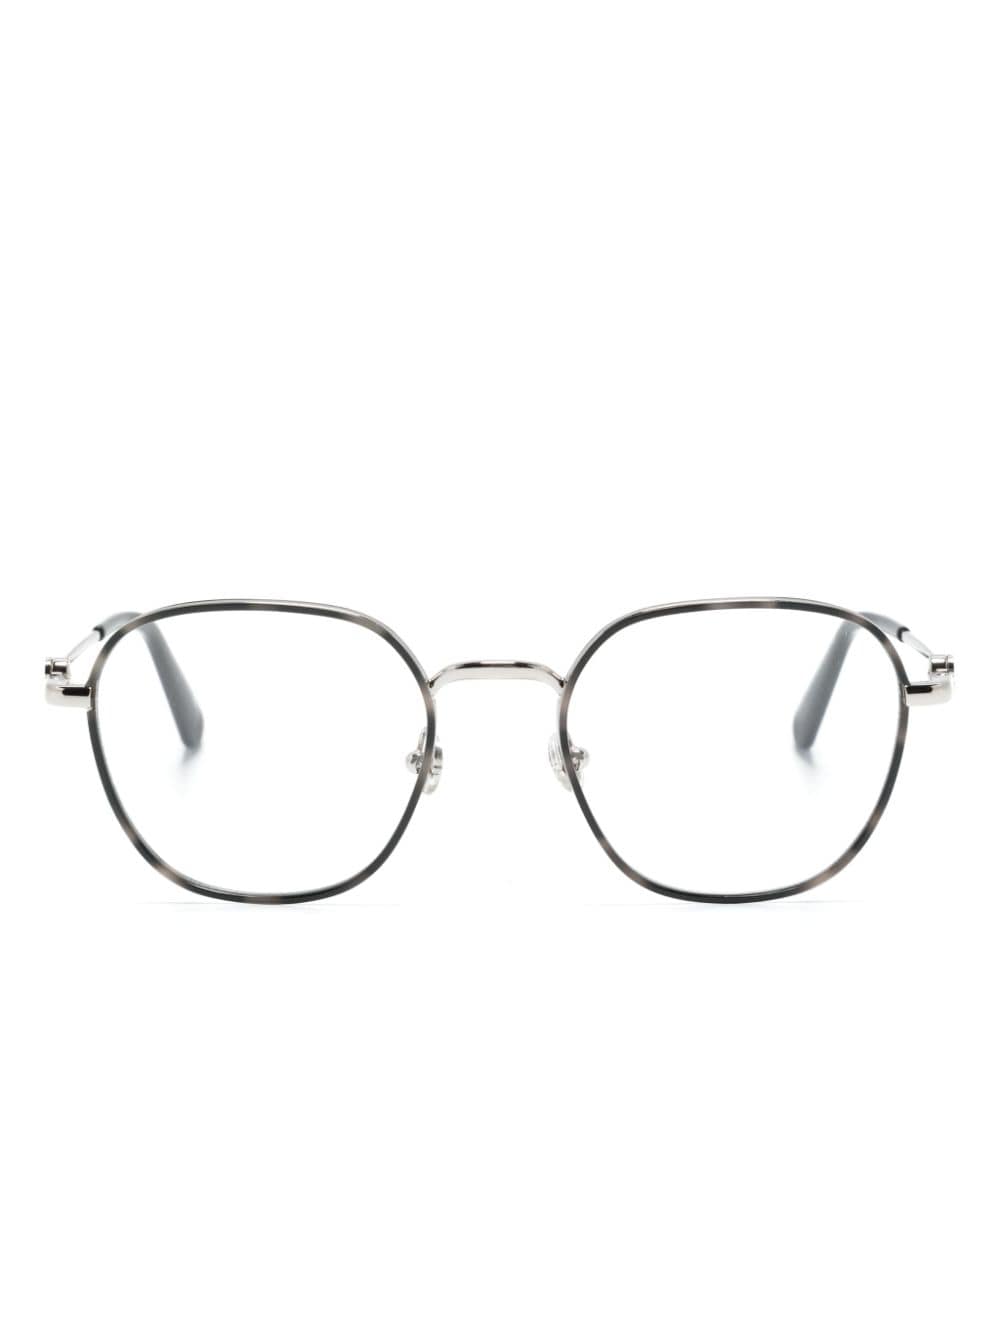 Moncler Eyewear Brille mit eckigem Gestell - Silber von Moncler Eyewear